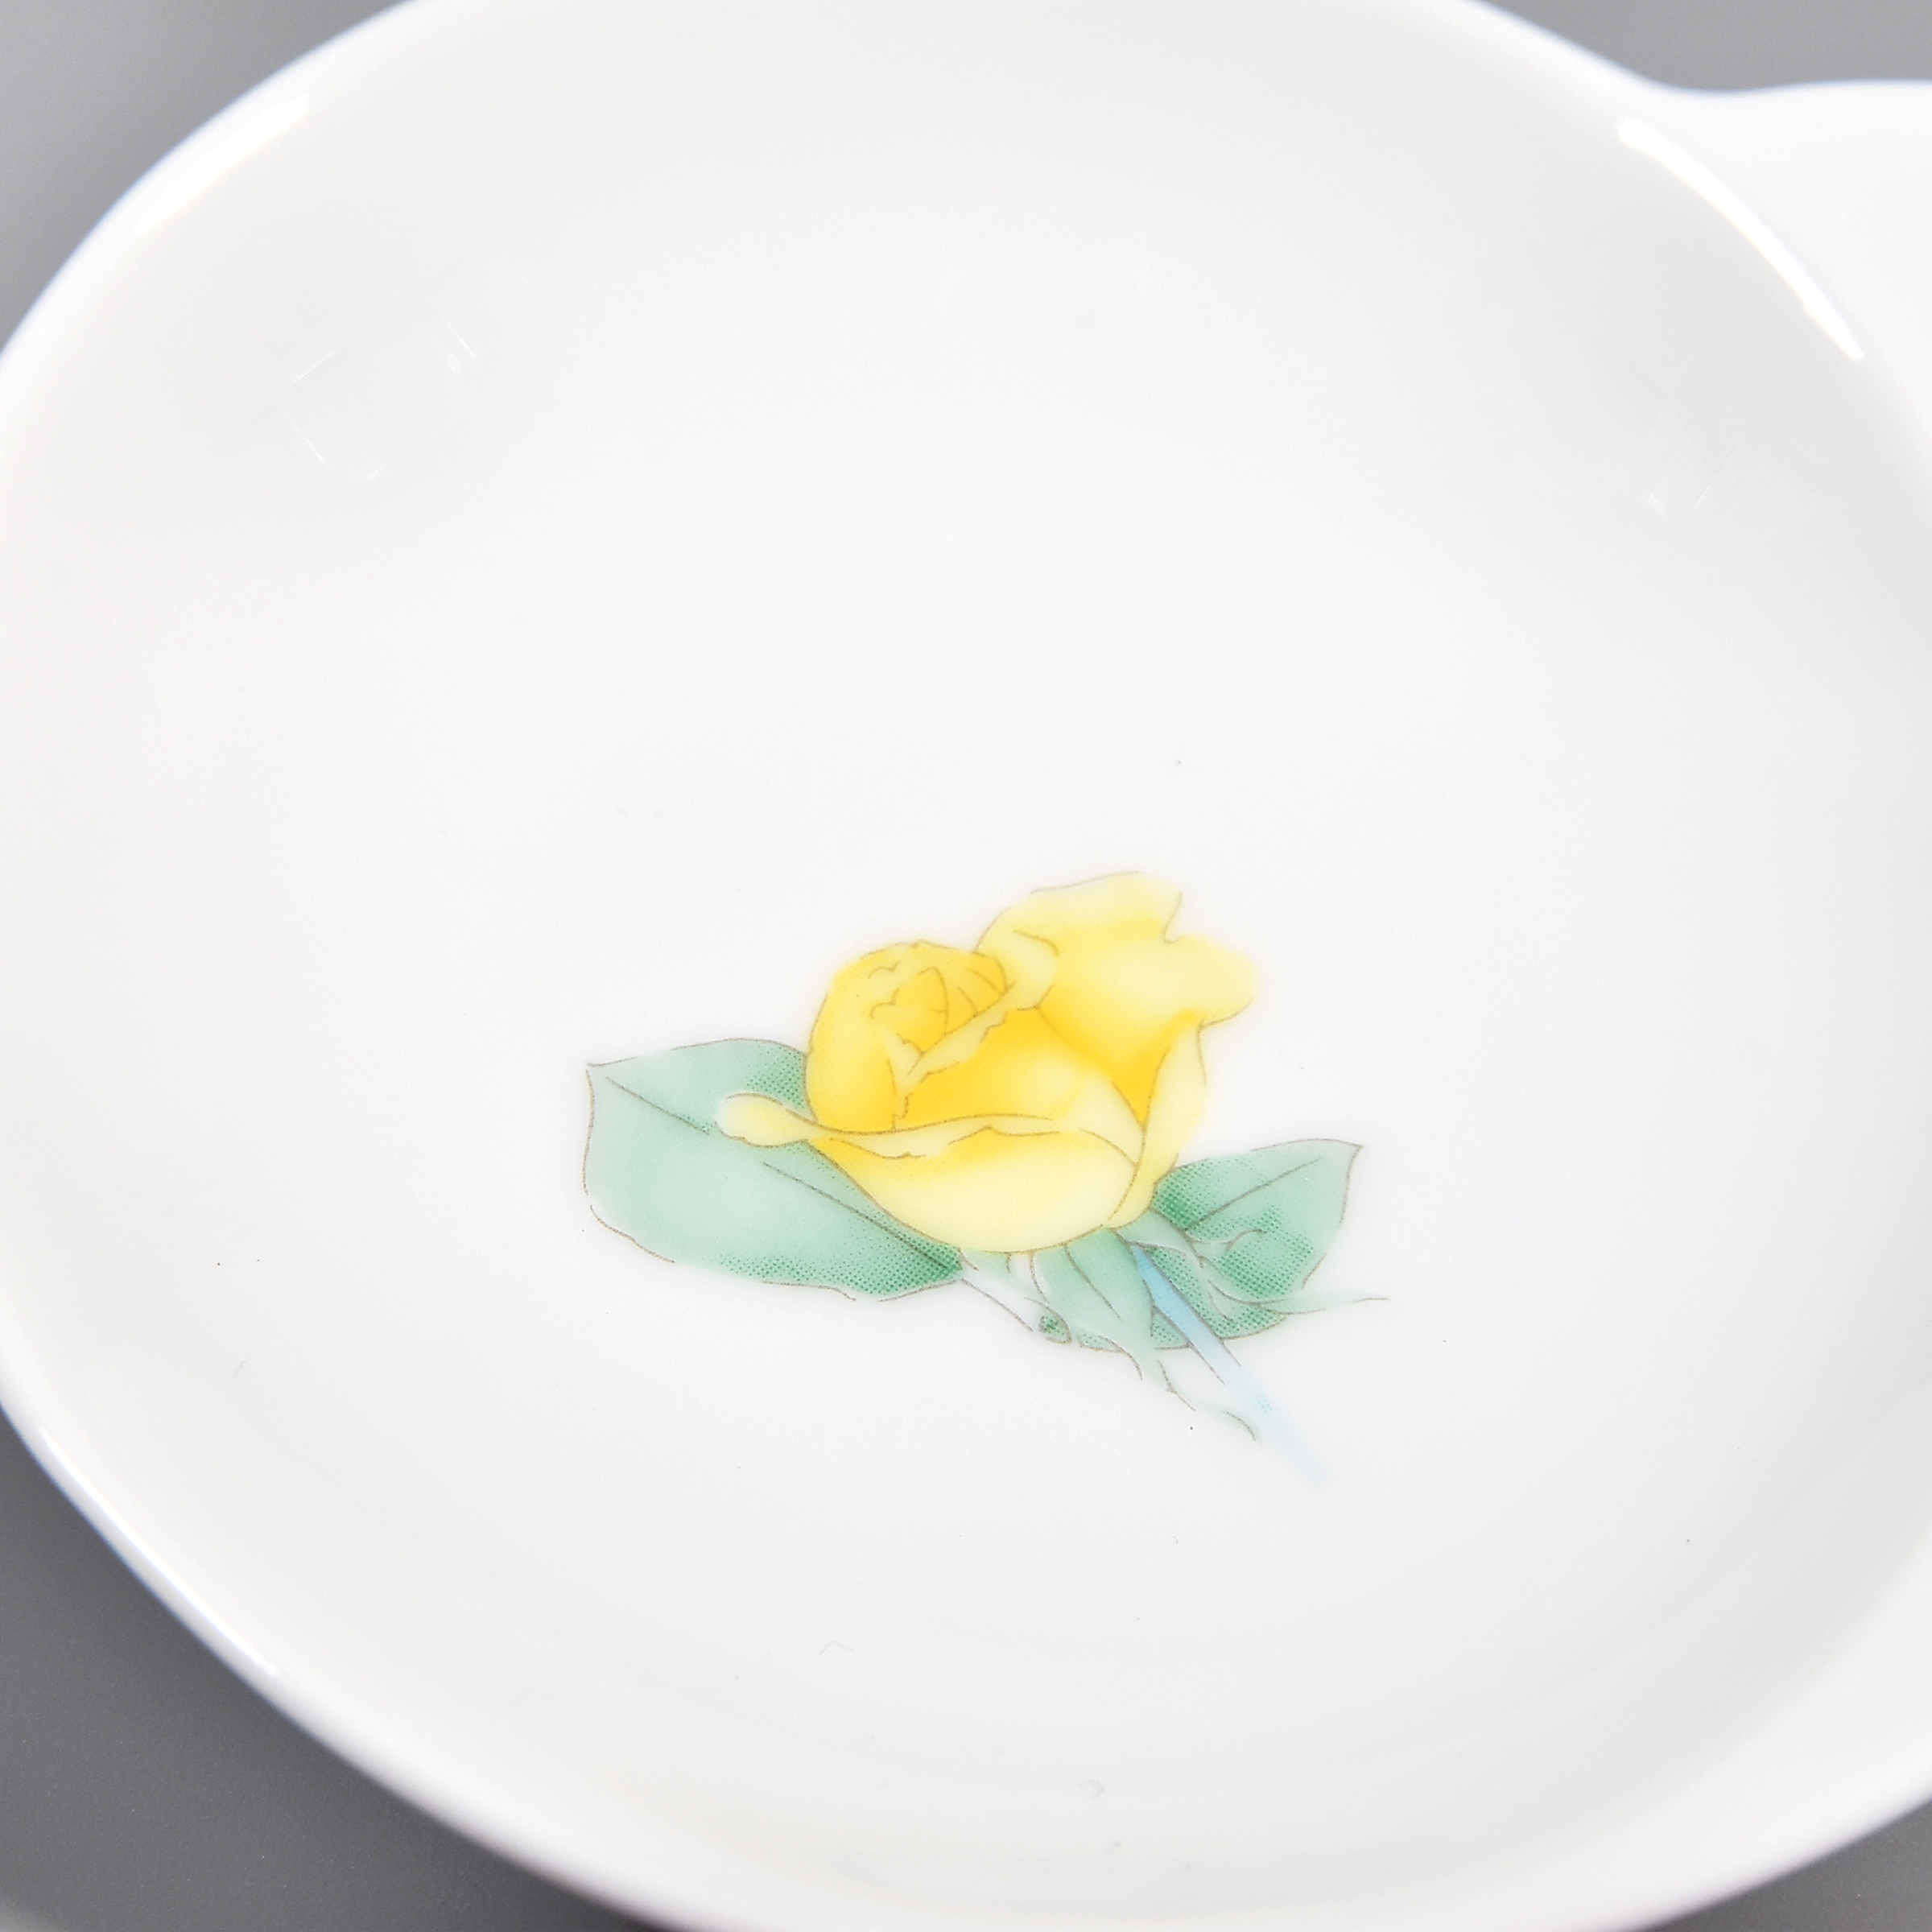 お皿の中央にはバラのデザインです。花弁はグラデーションになっていて綺麗です。